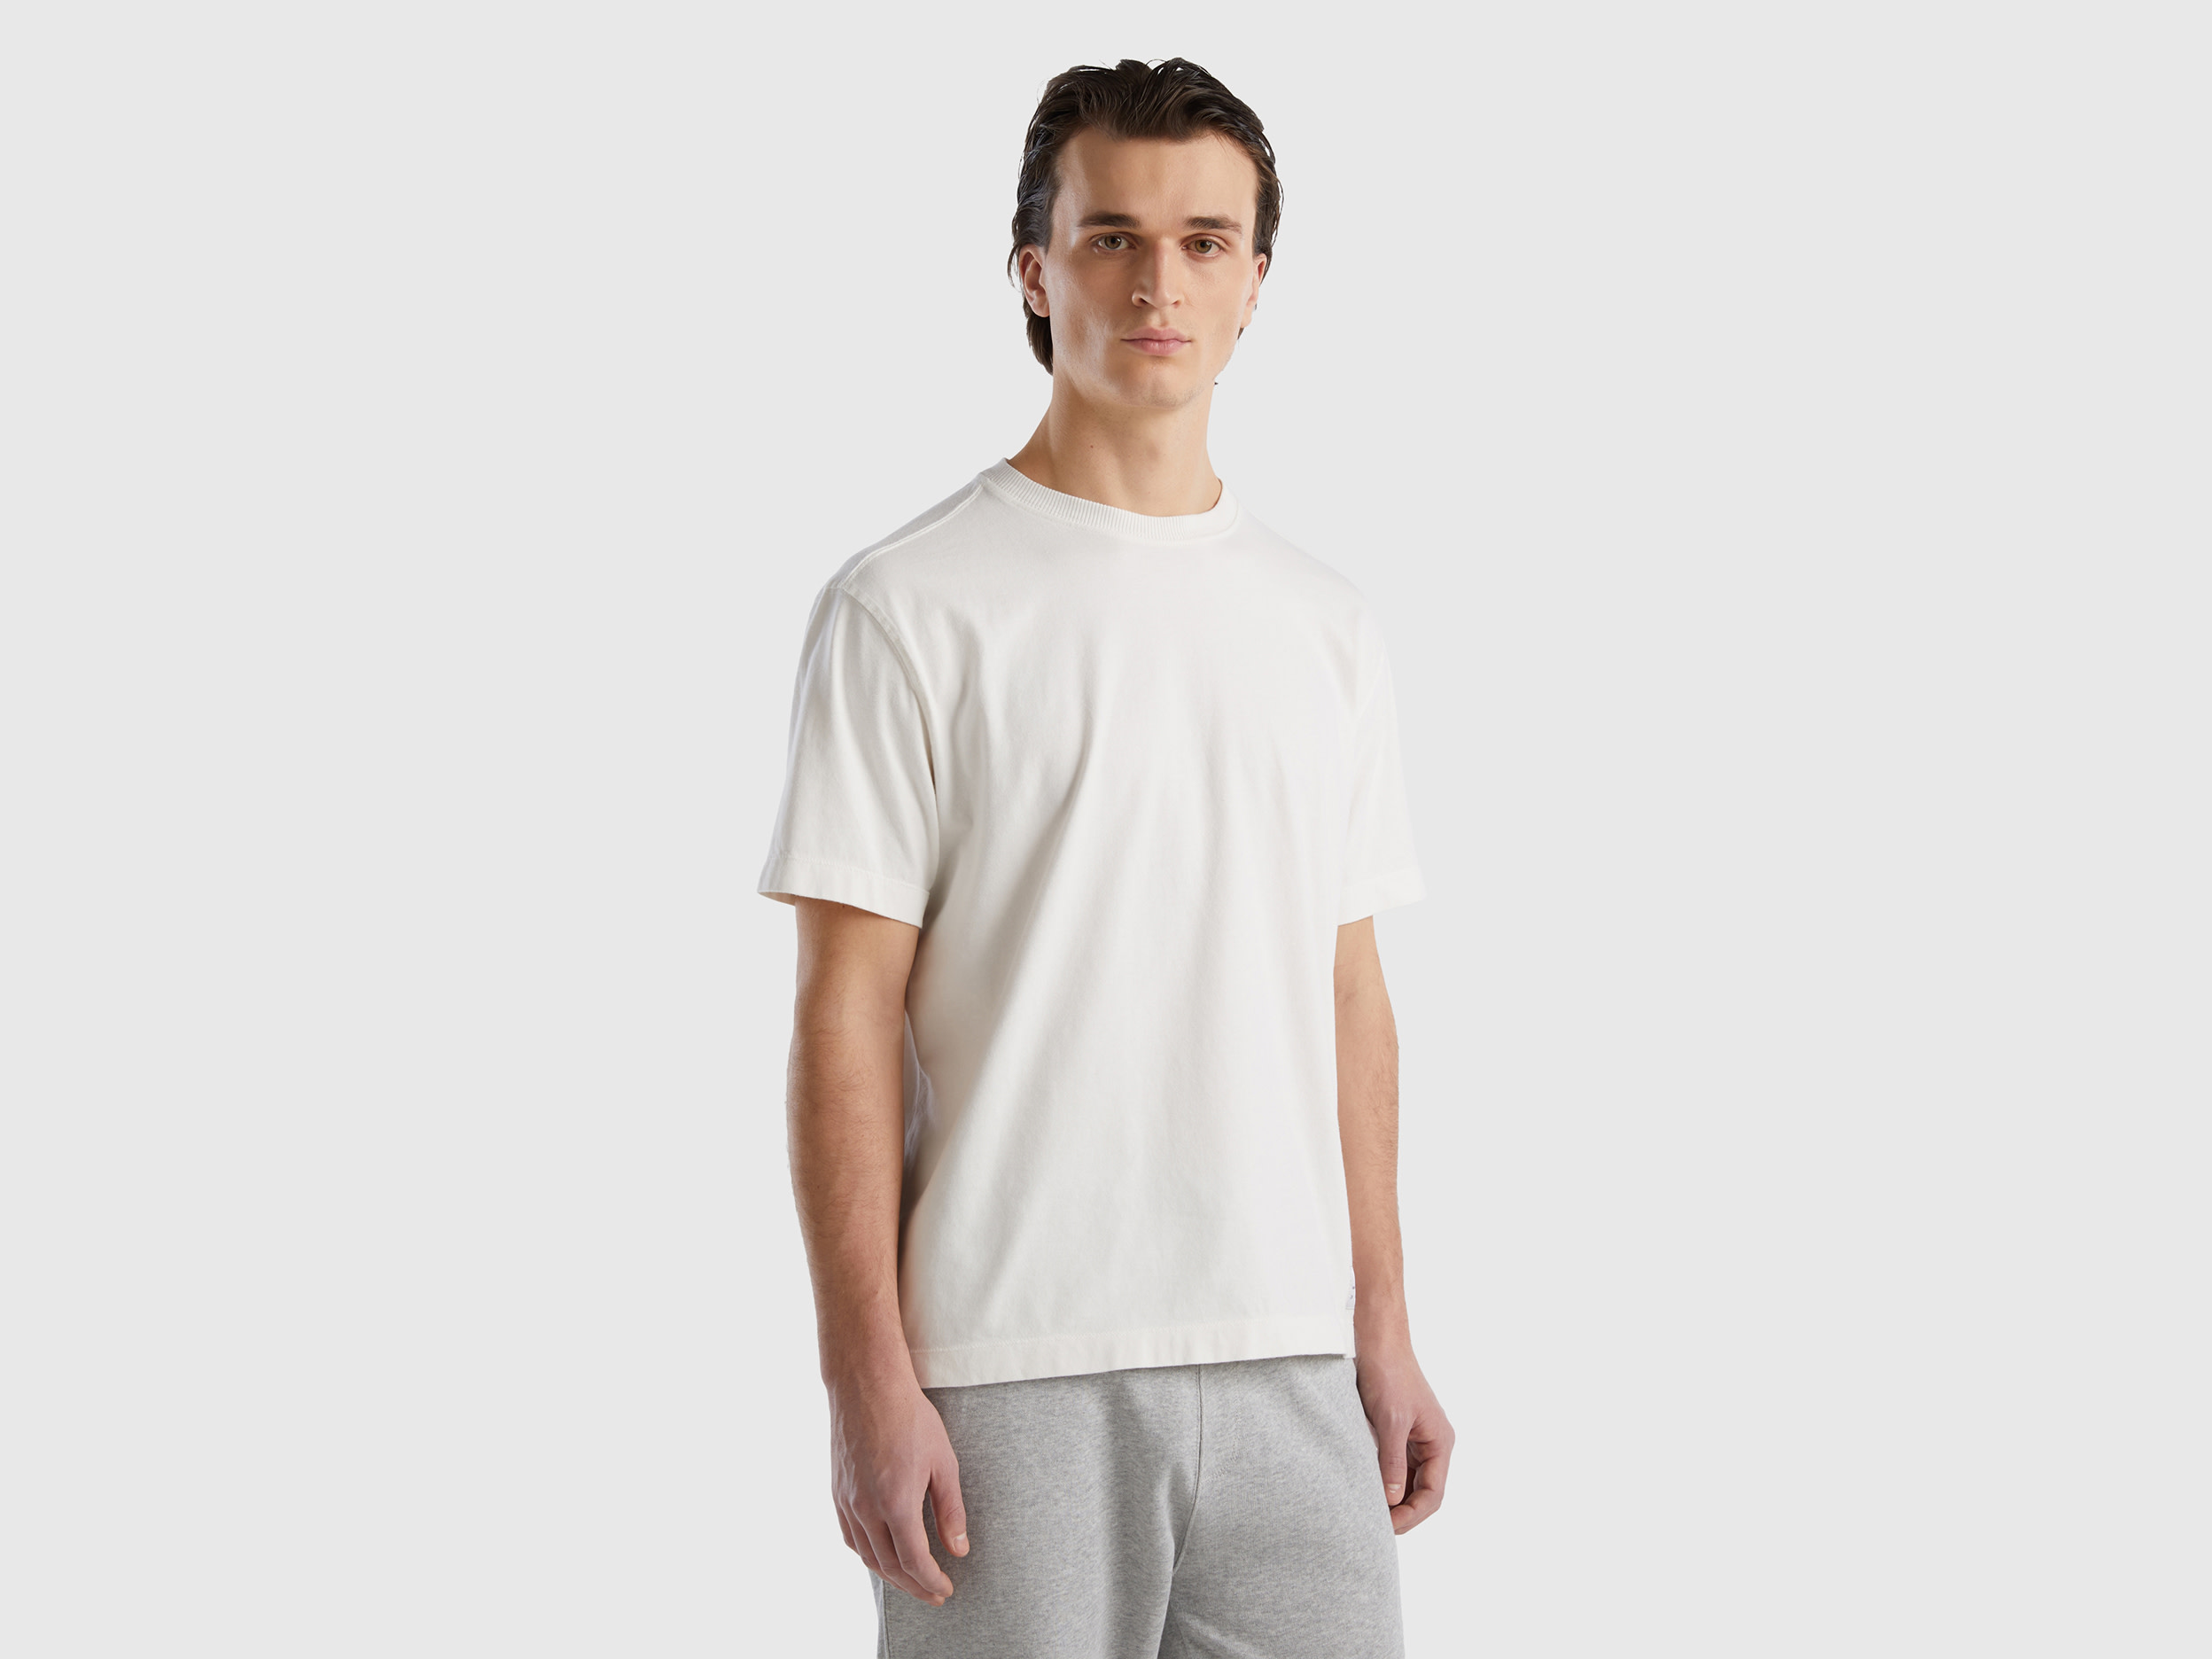 Image of Benetton, 100% Organic Cotton Crew Neck T-shirt, size XXXL, Creamy White, Men